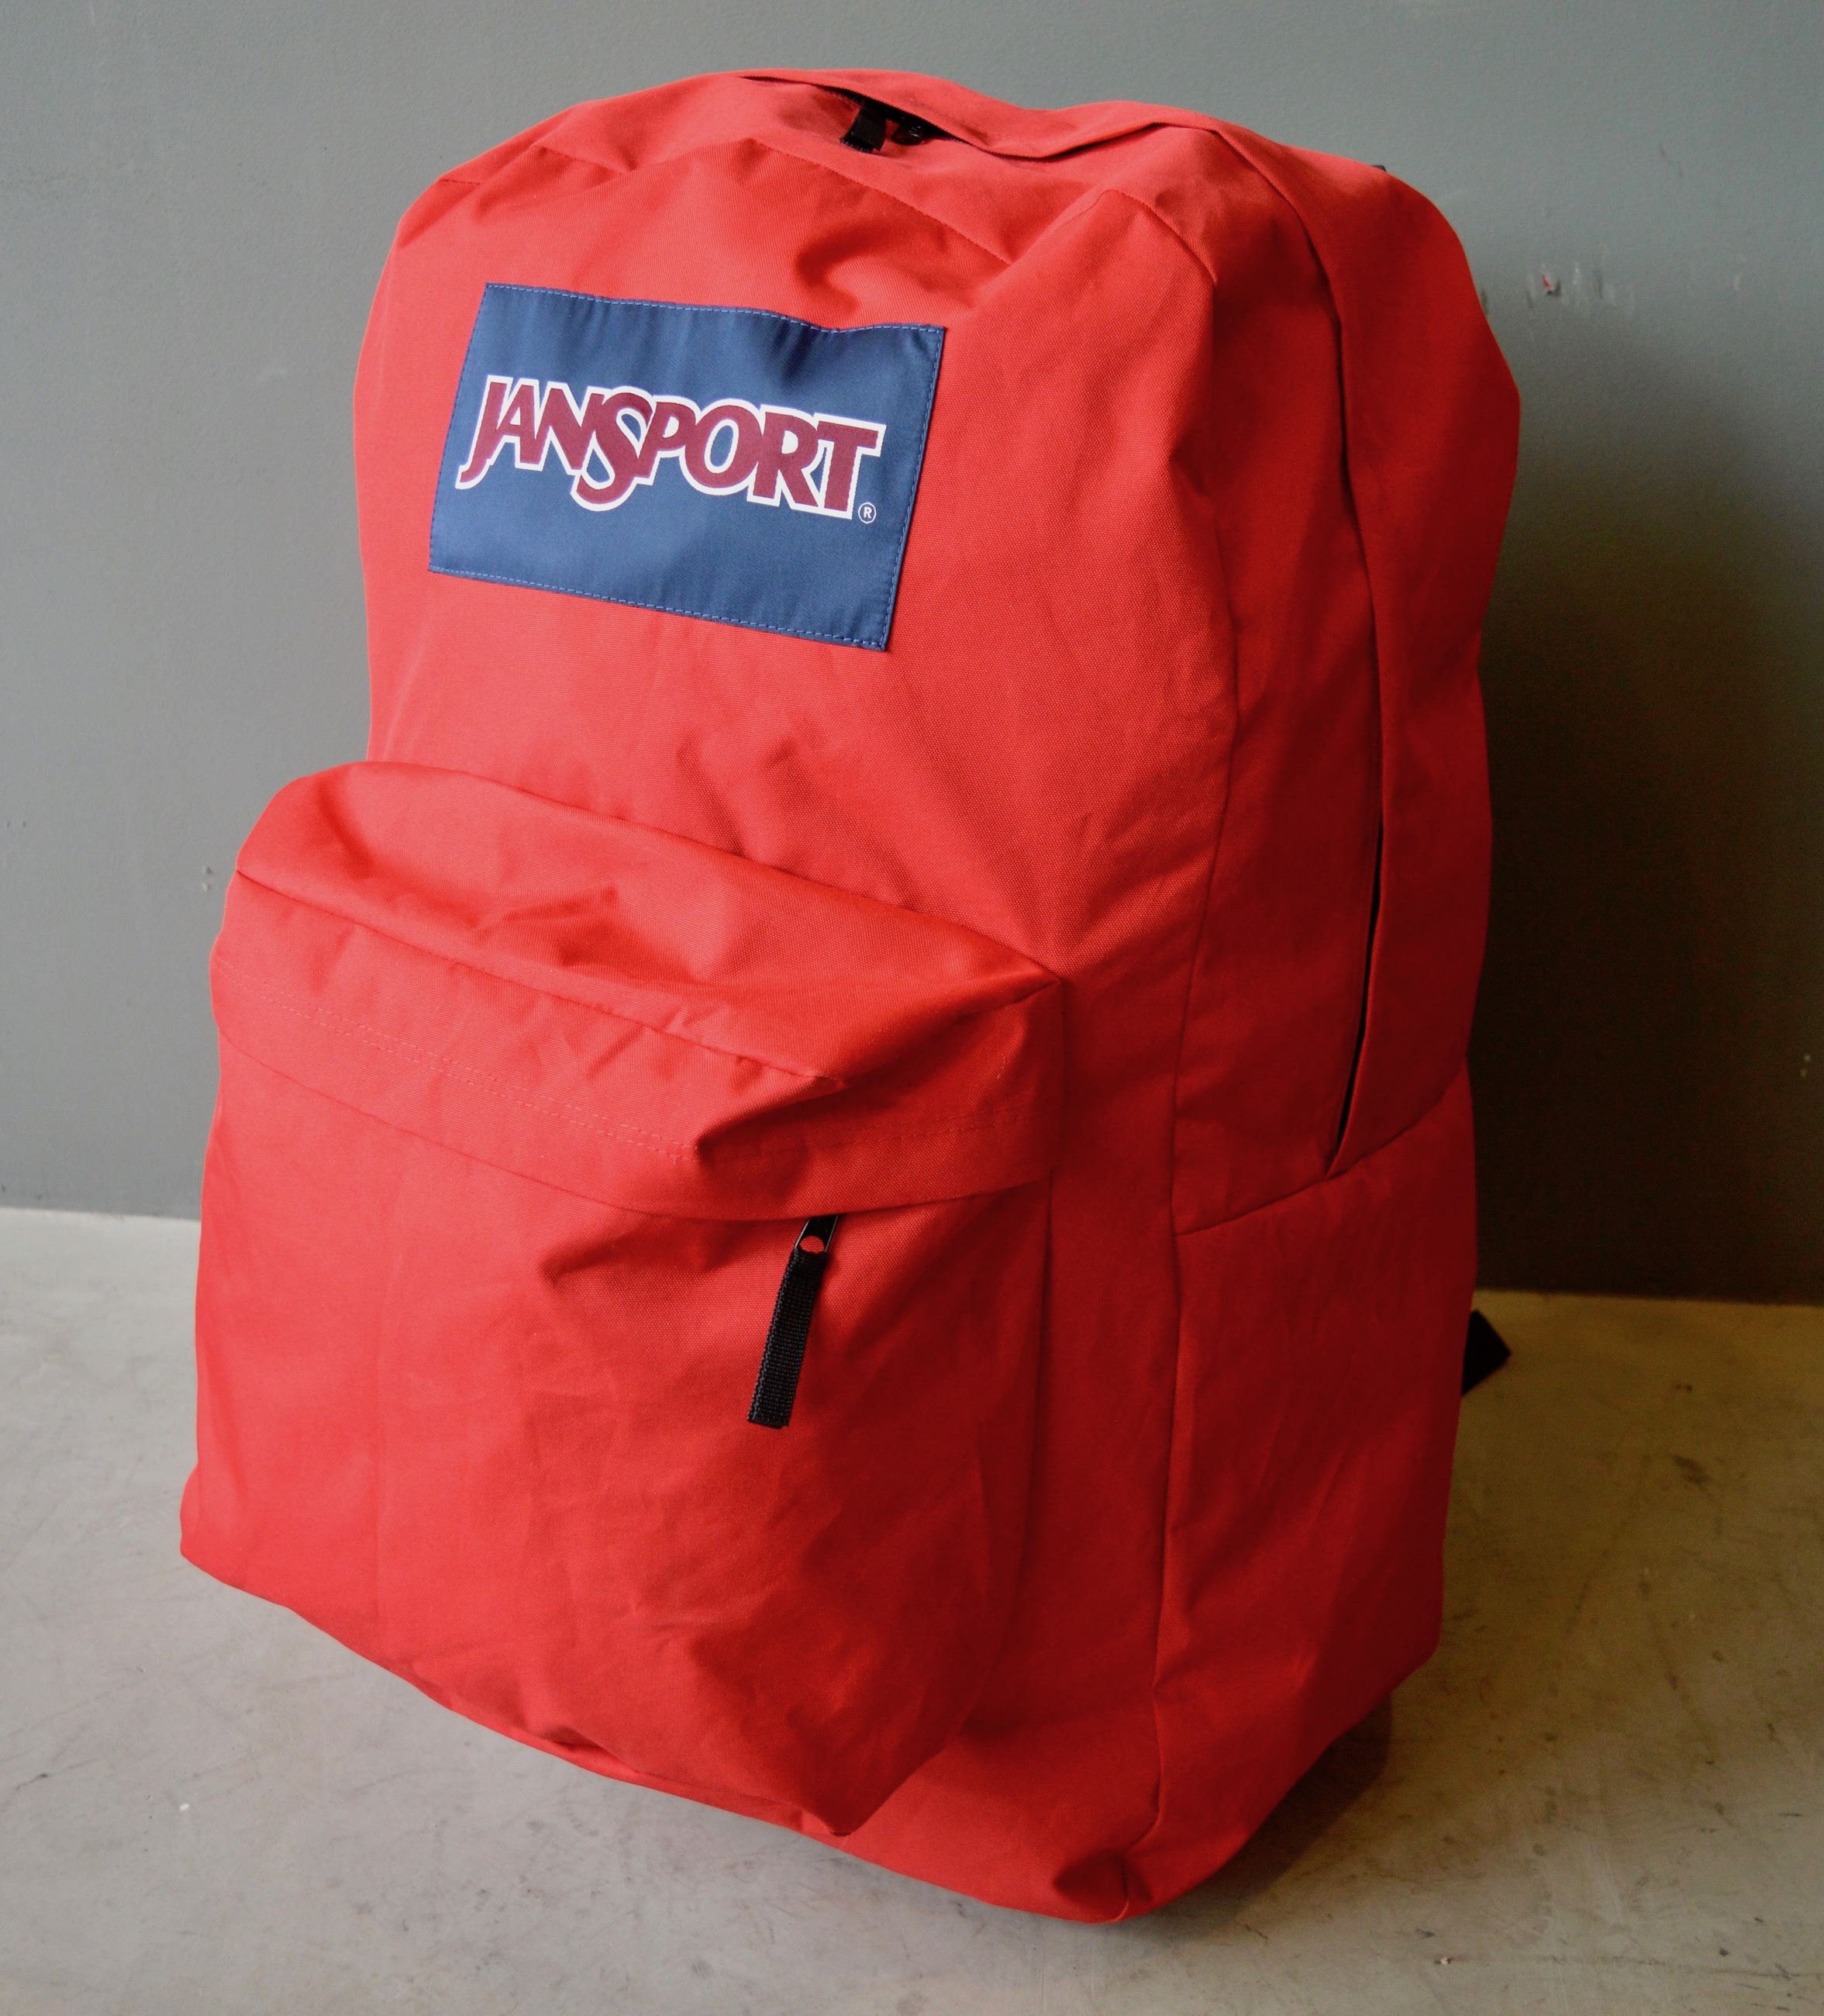 Giant backpack : r/mildlyinteresting